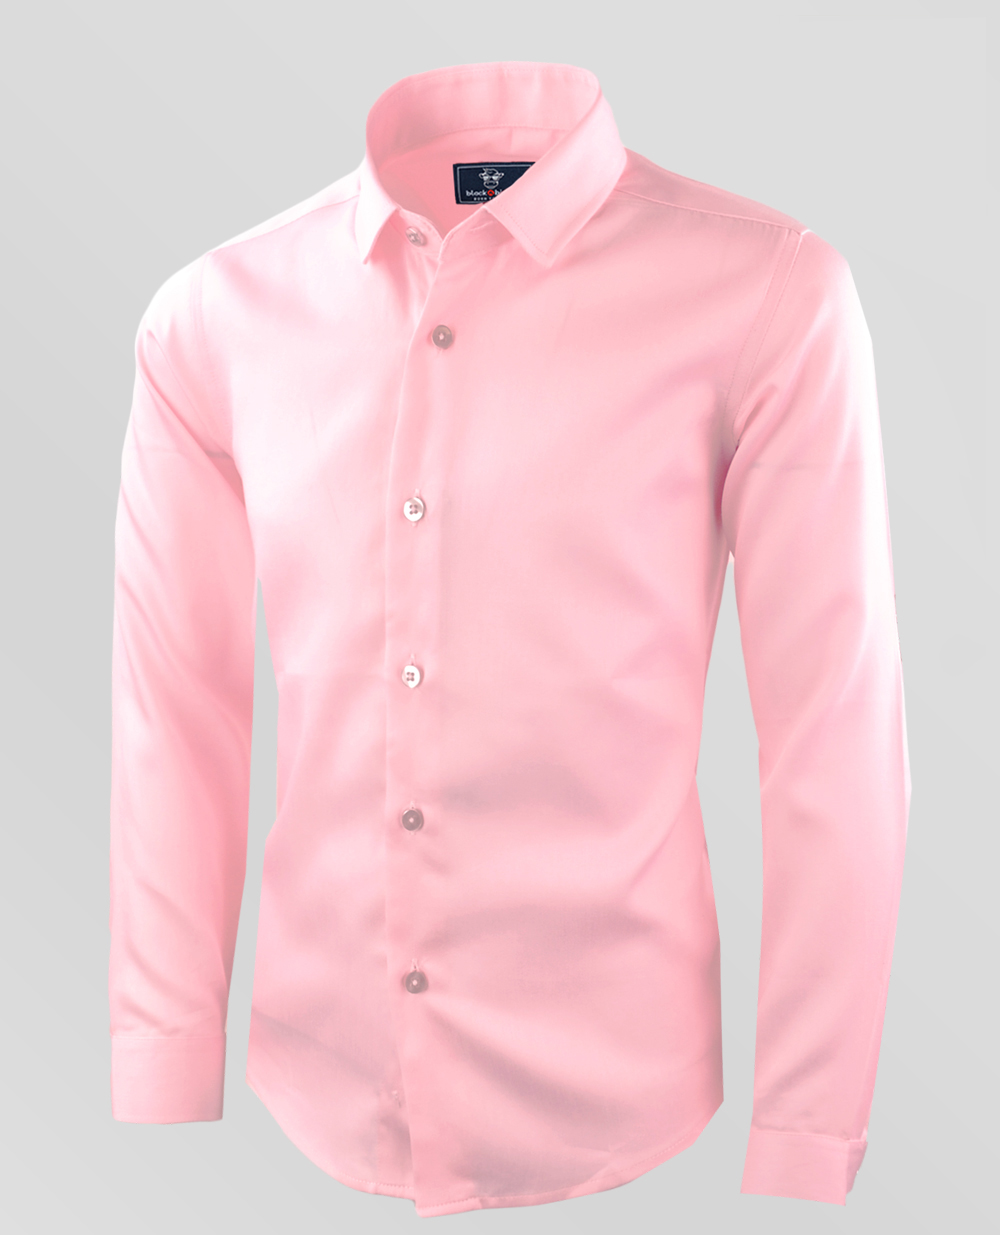 pink dress shirt